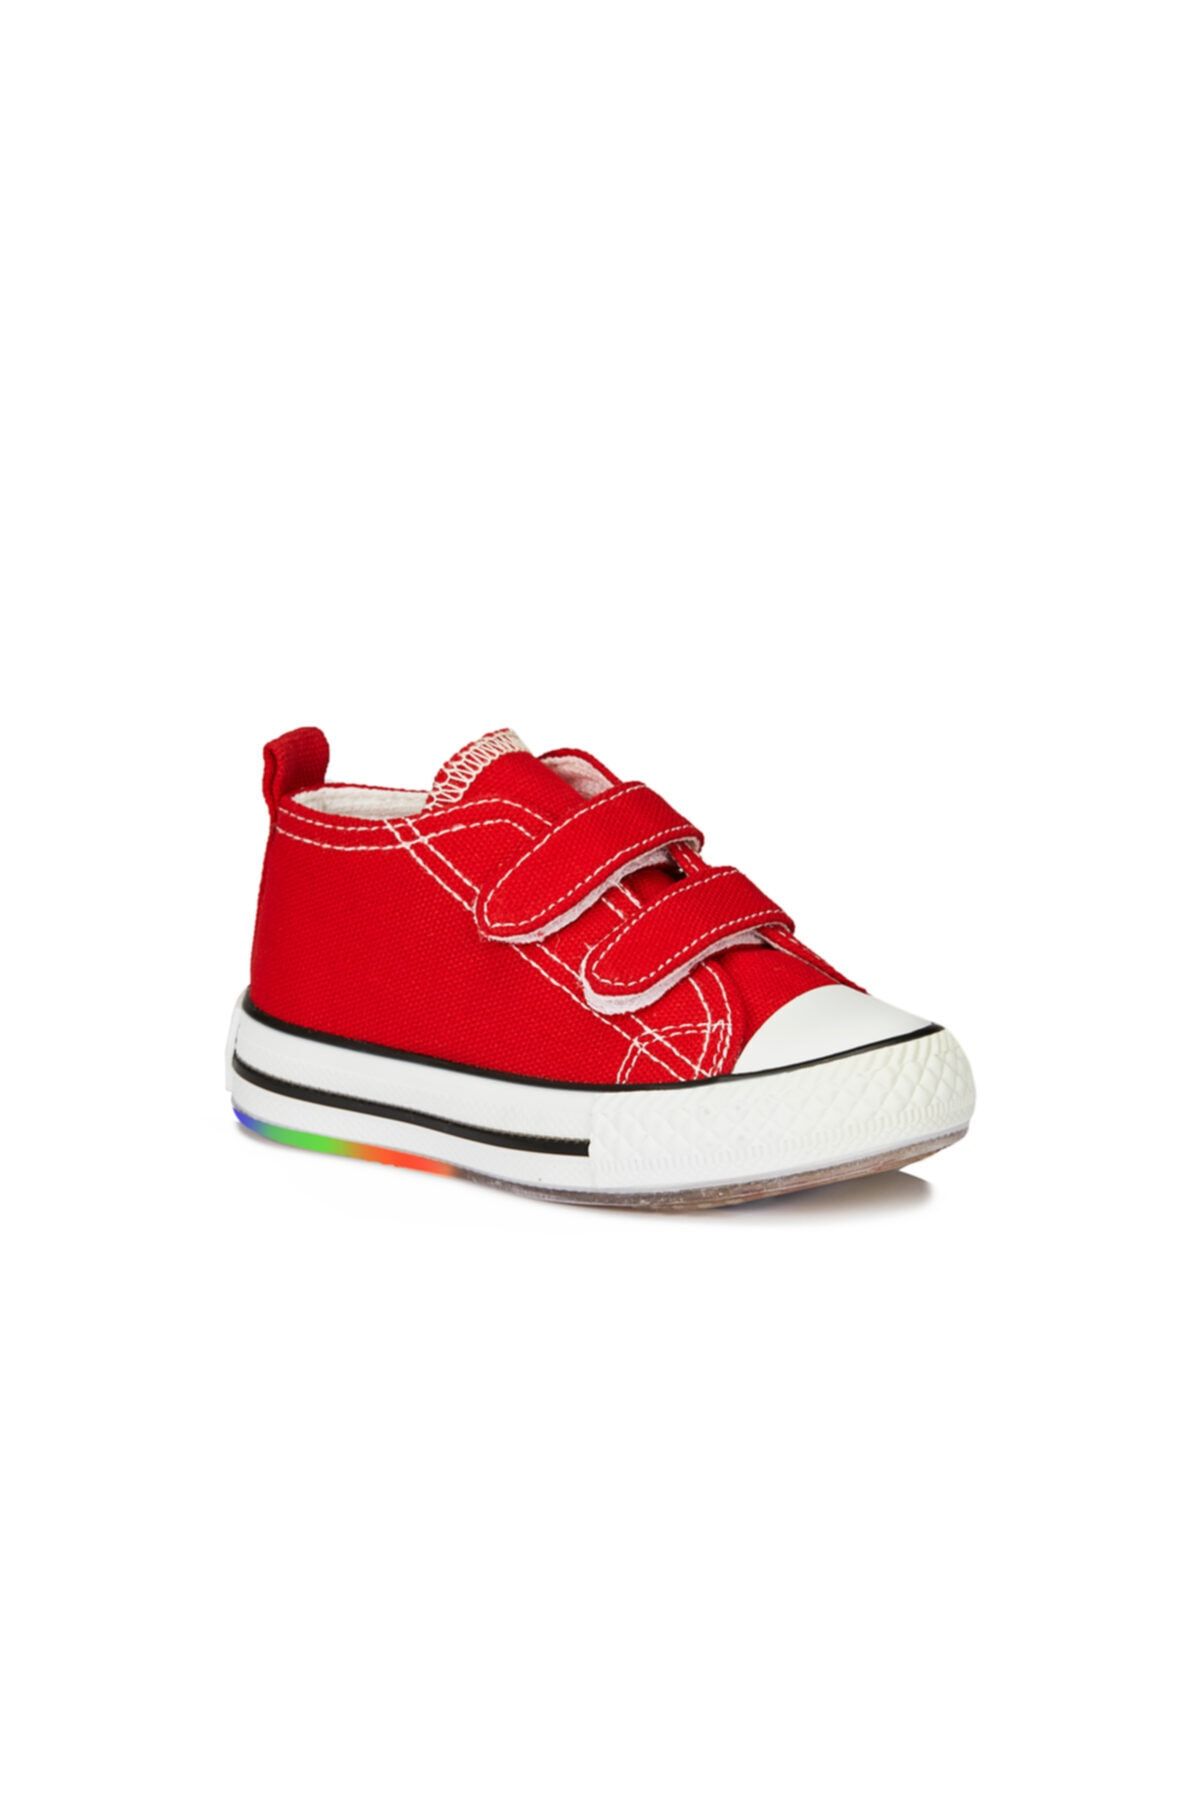 Vicco Pino Unisex Çocuk Kırmızı Spor Ayakkabı